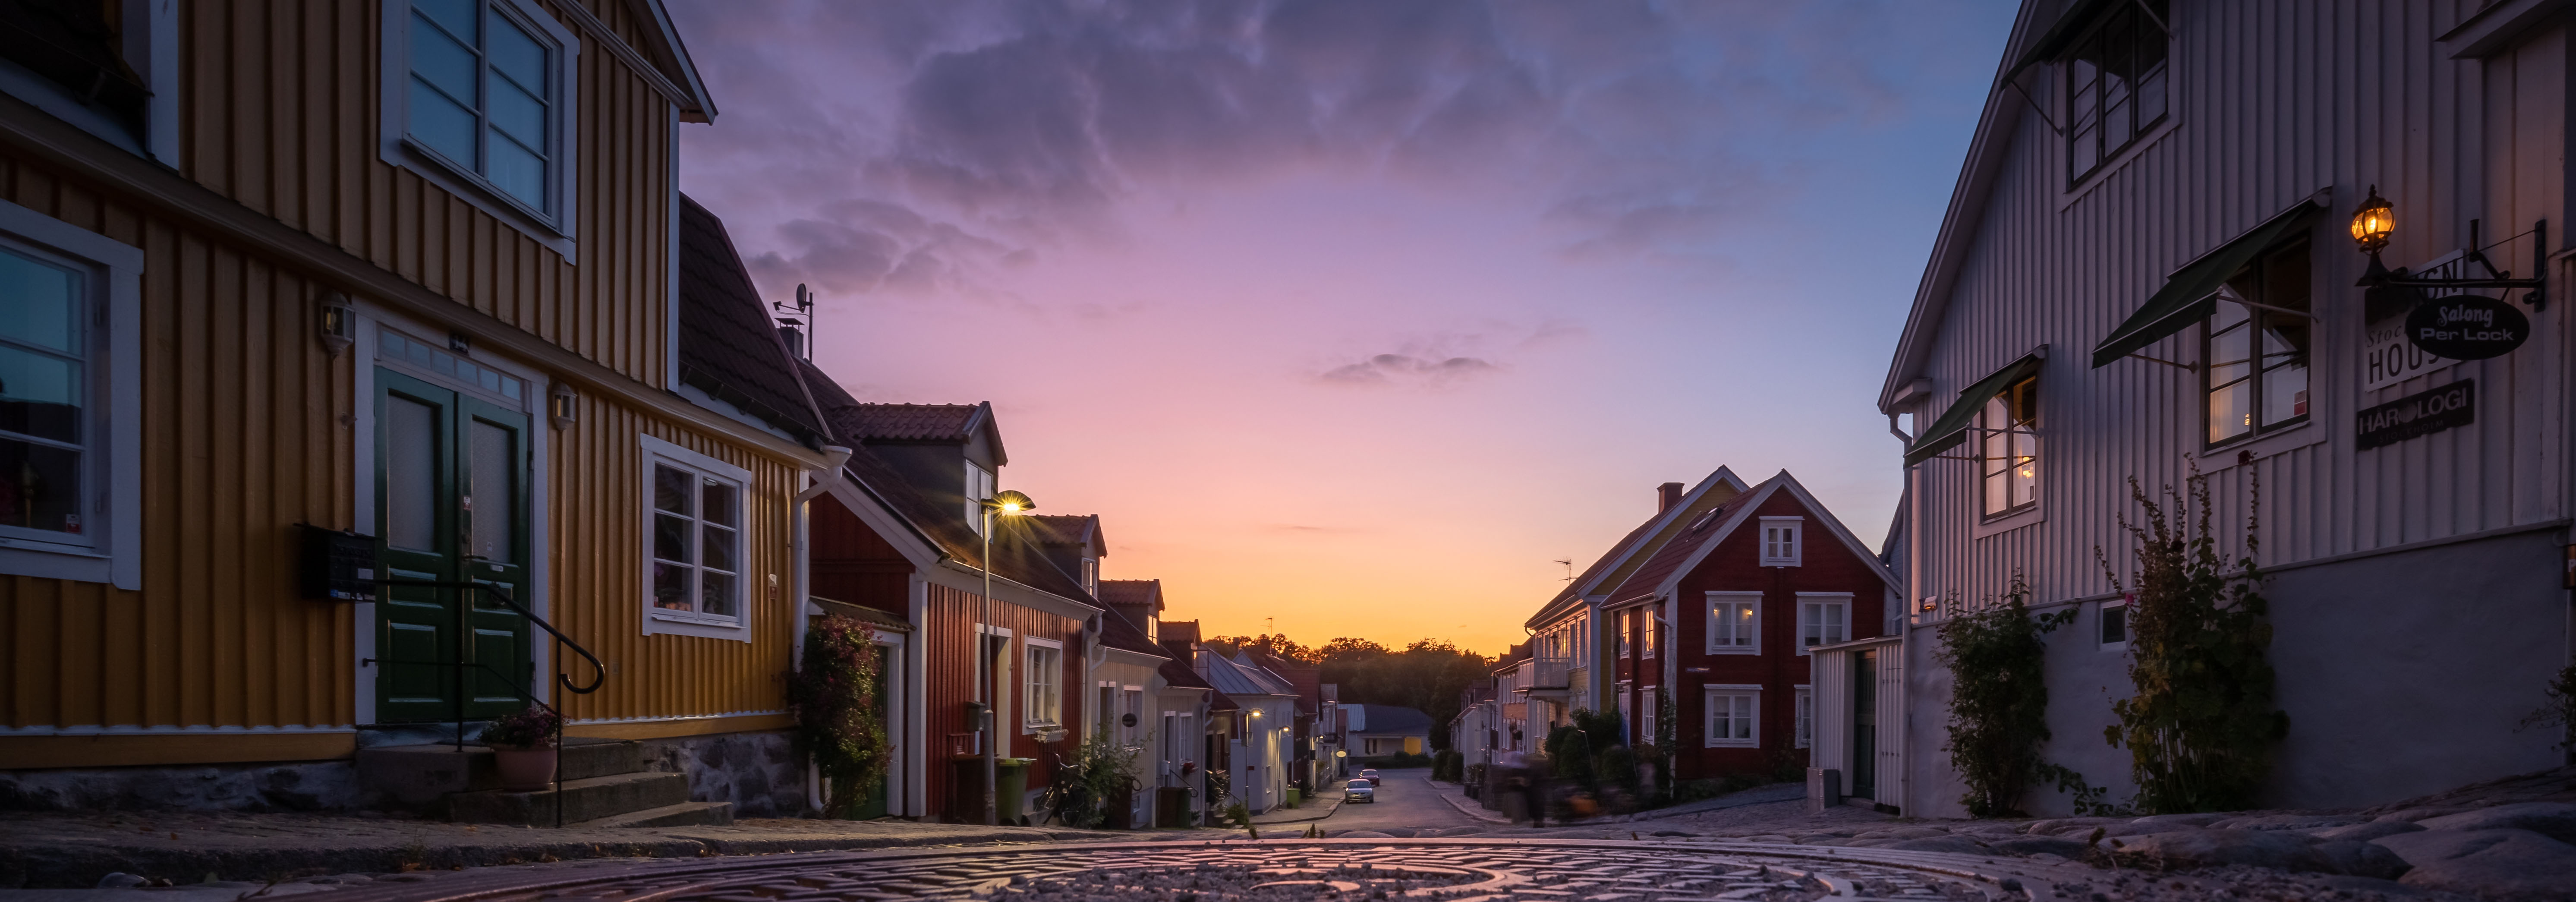 Vy från gamla delen av Ronneby, kvarteret Bergslagen, gata i solnedgång